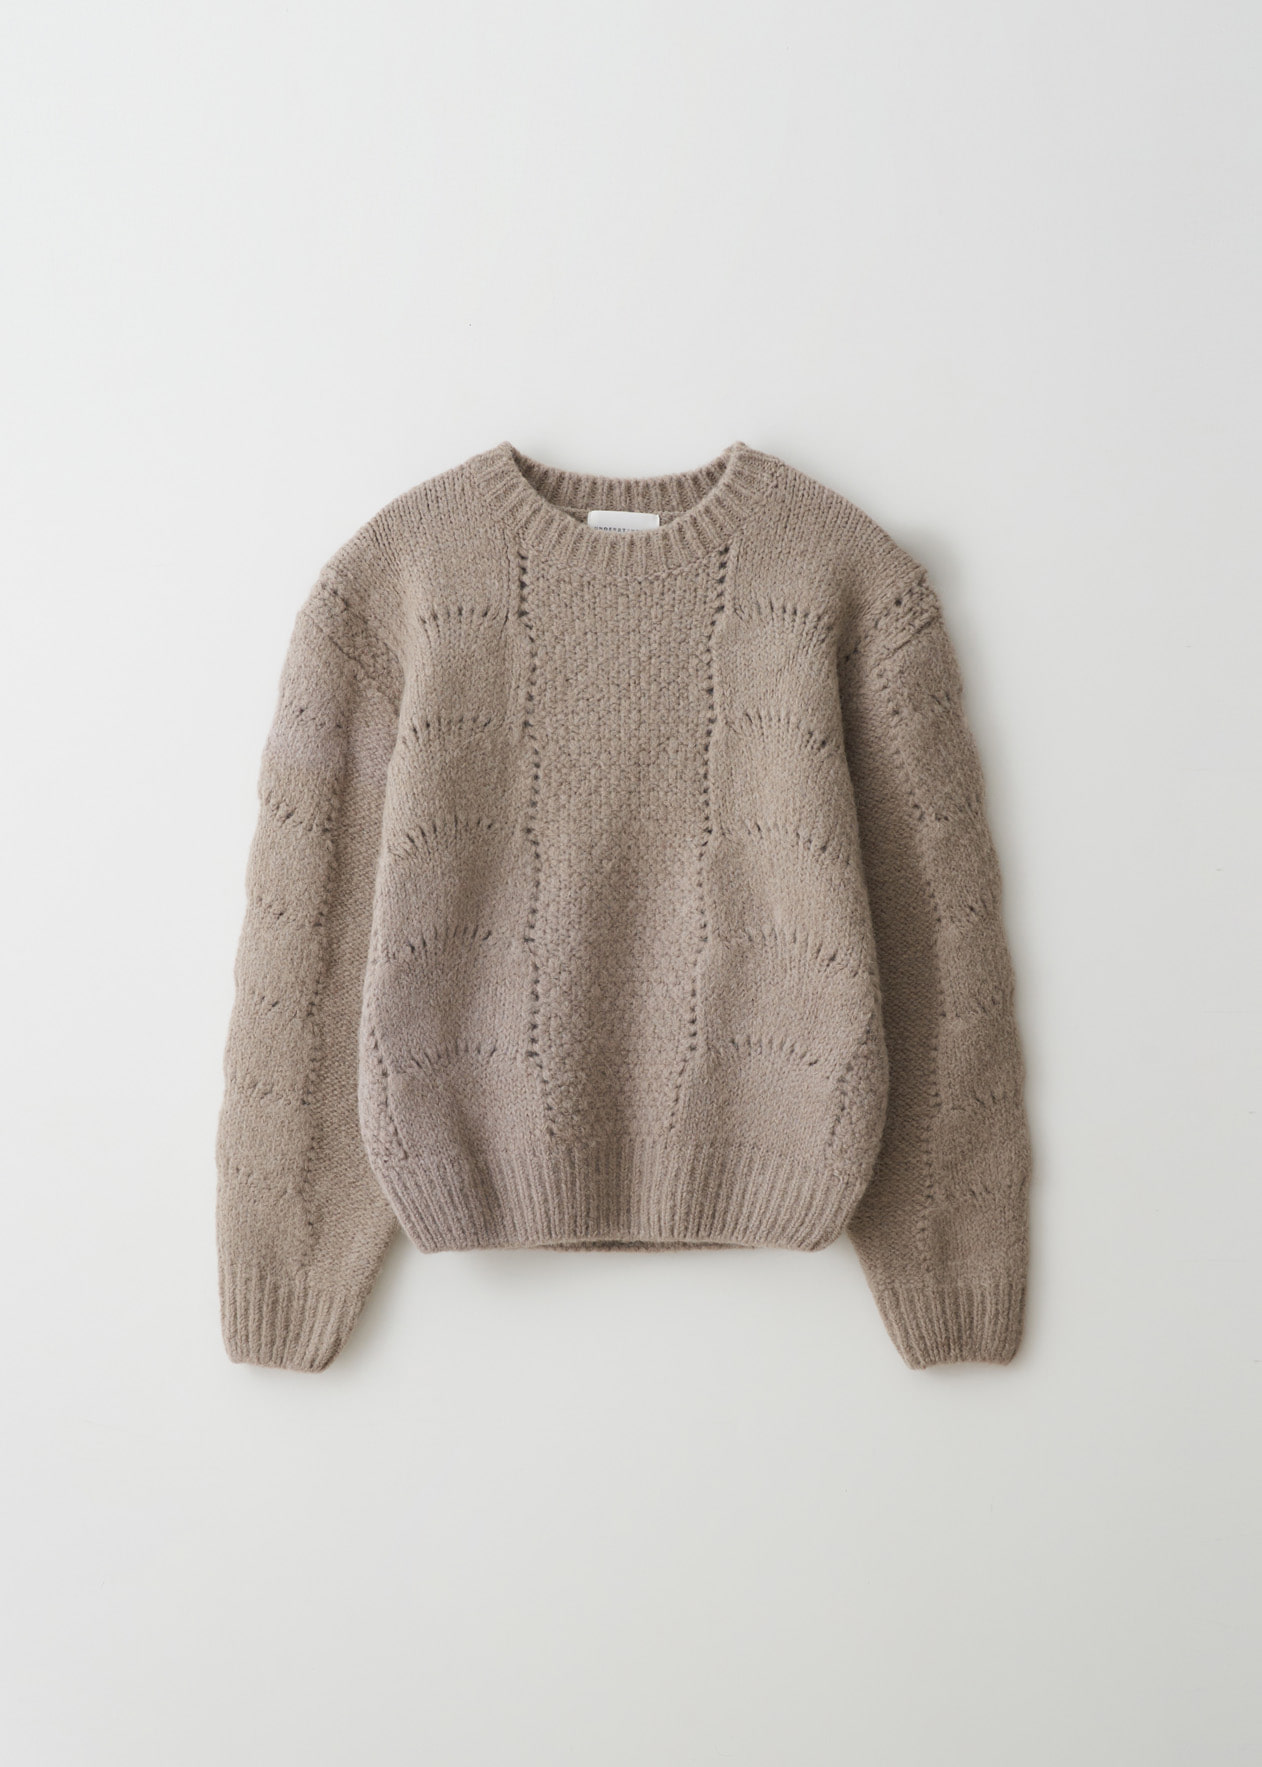 SALE_Net knit